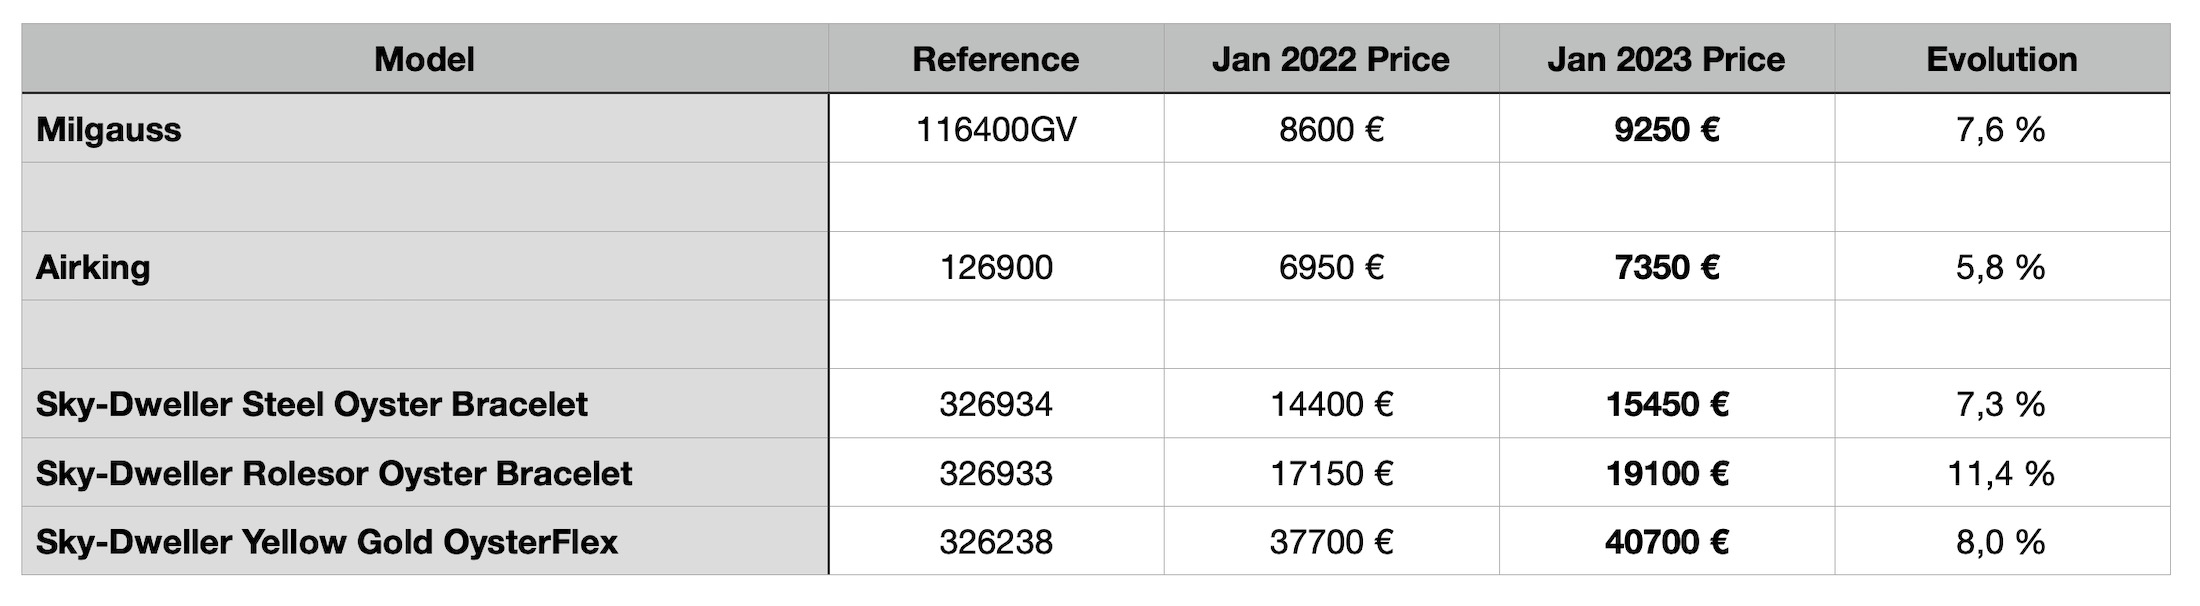 2023 Rolex Price List - Increase Compared 2022 - Rolex Milgauss Airking